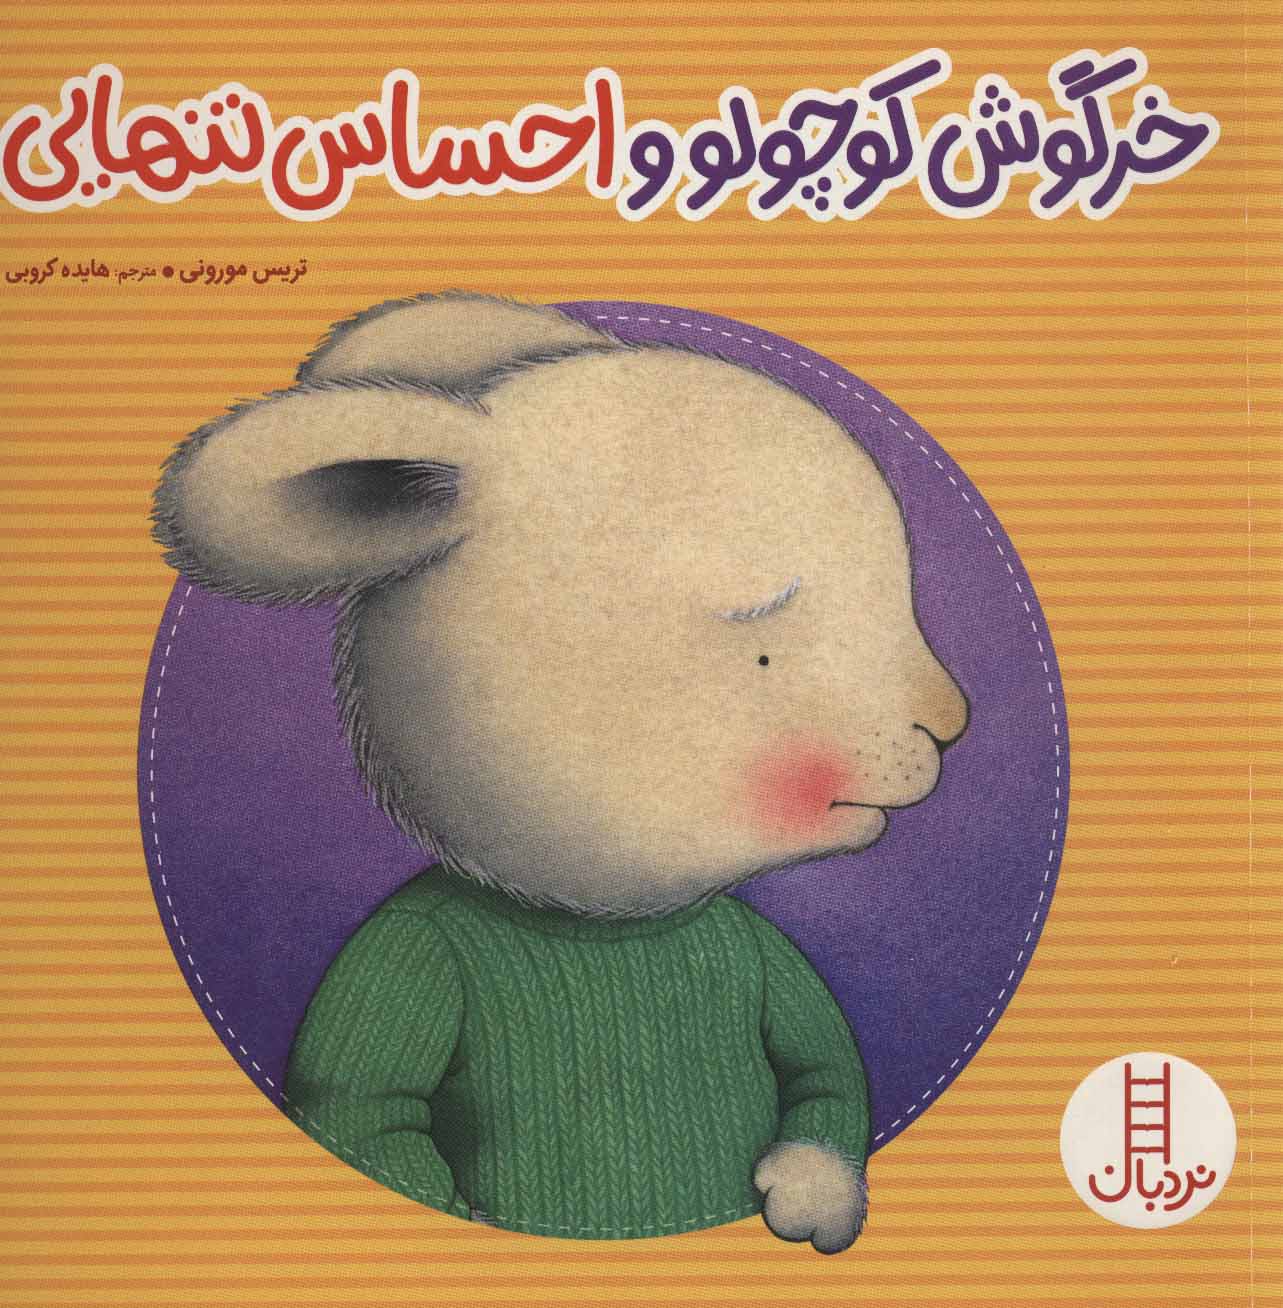 کتاب خرگوش کوچولو و احساس تنهایی